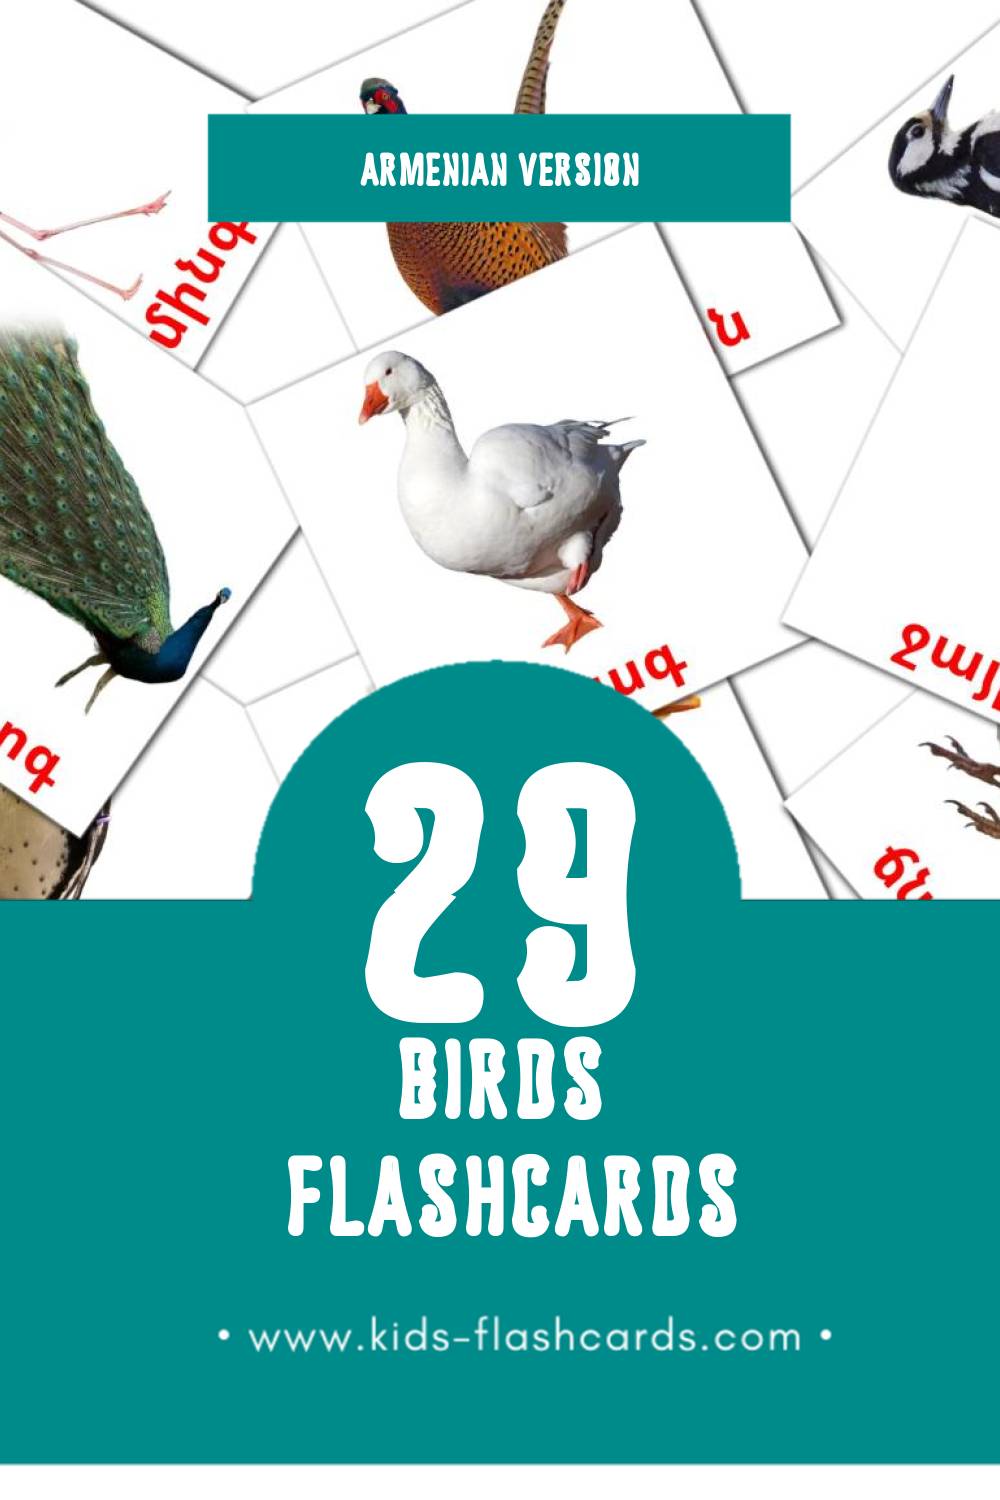 Visual Թռչուններ Flashcards for Toddlers (11 cards in Armenian)